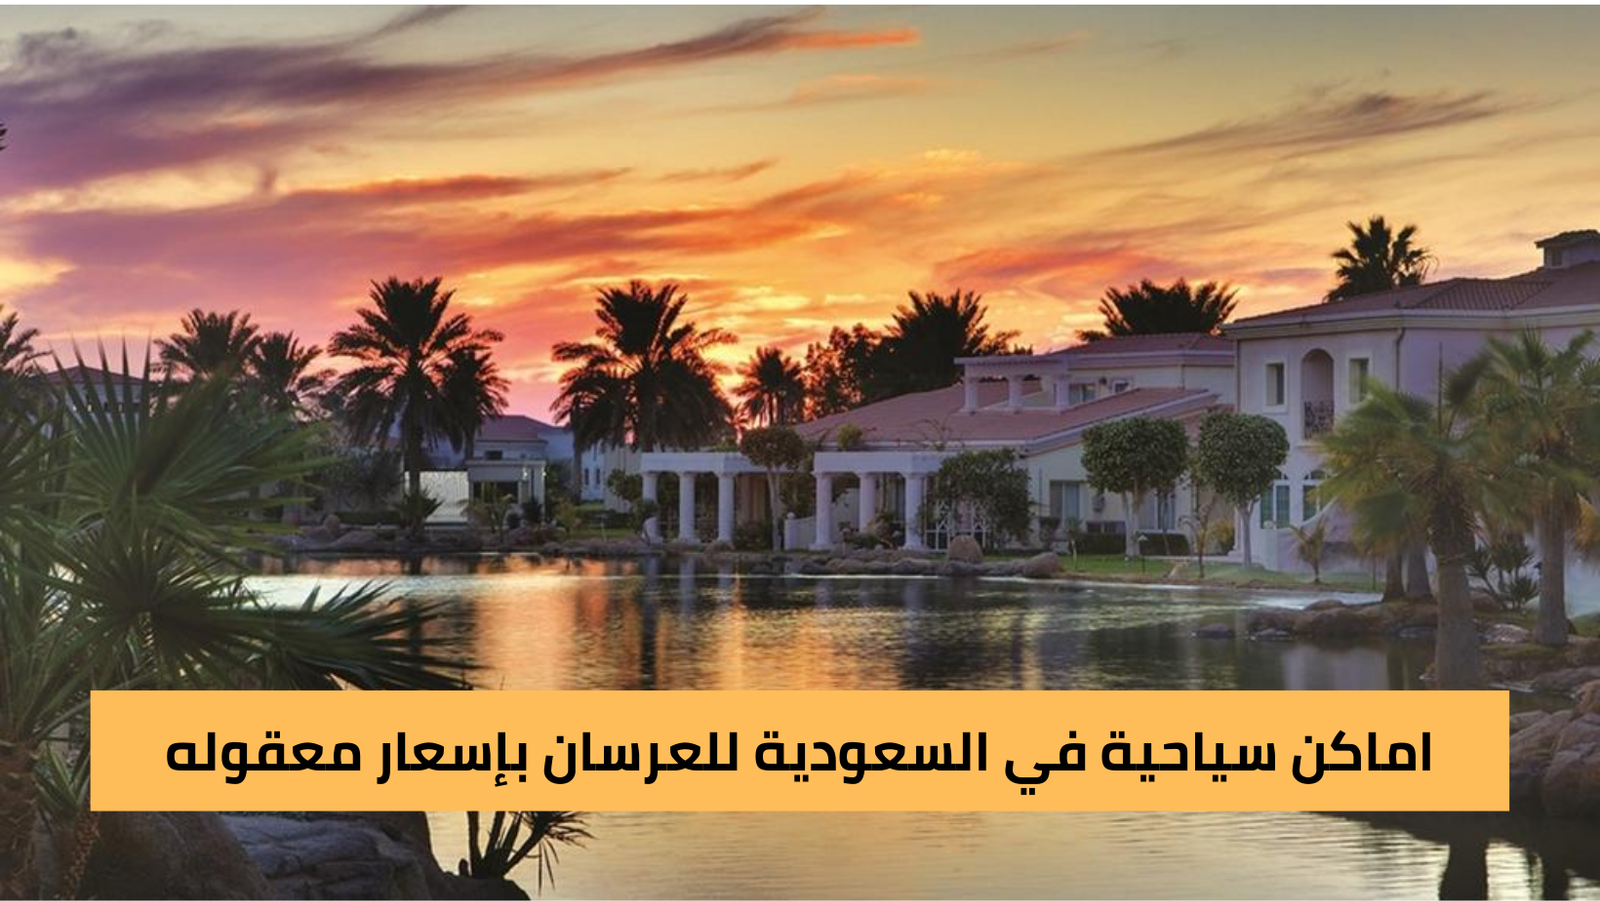 اماكن سياحية في السعودية للعرسان بإسعار معقوله